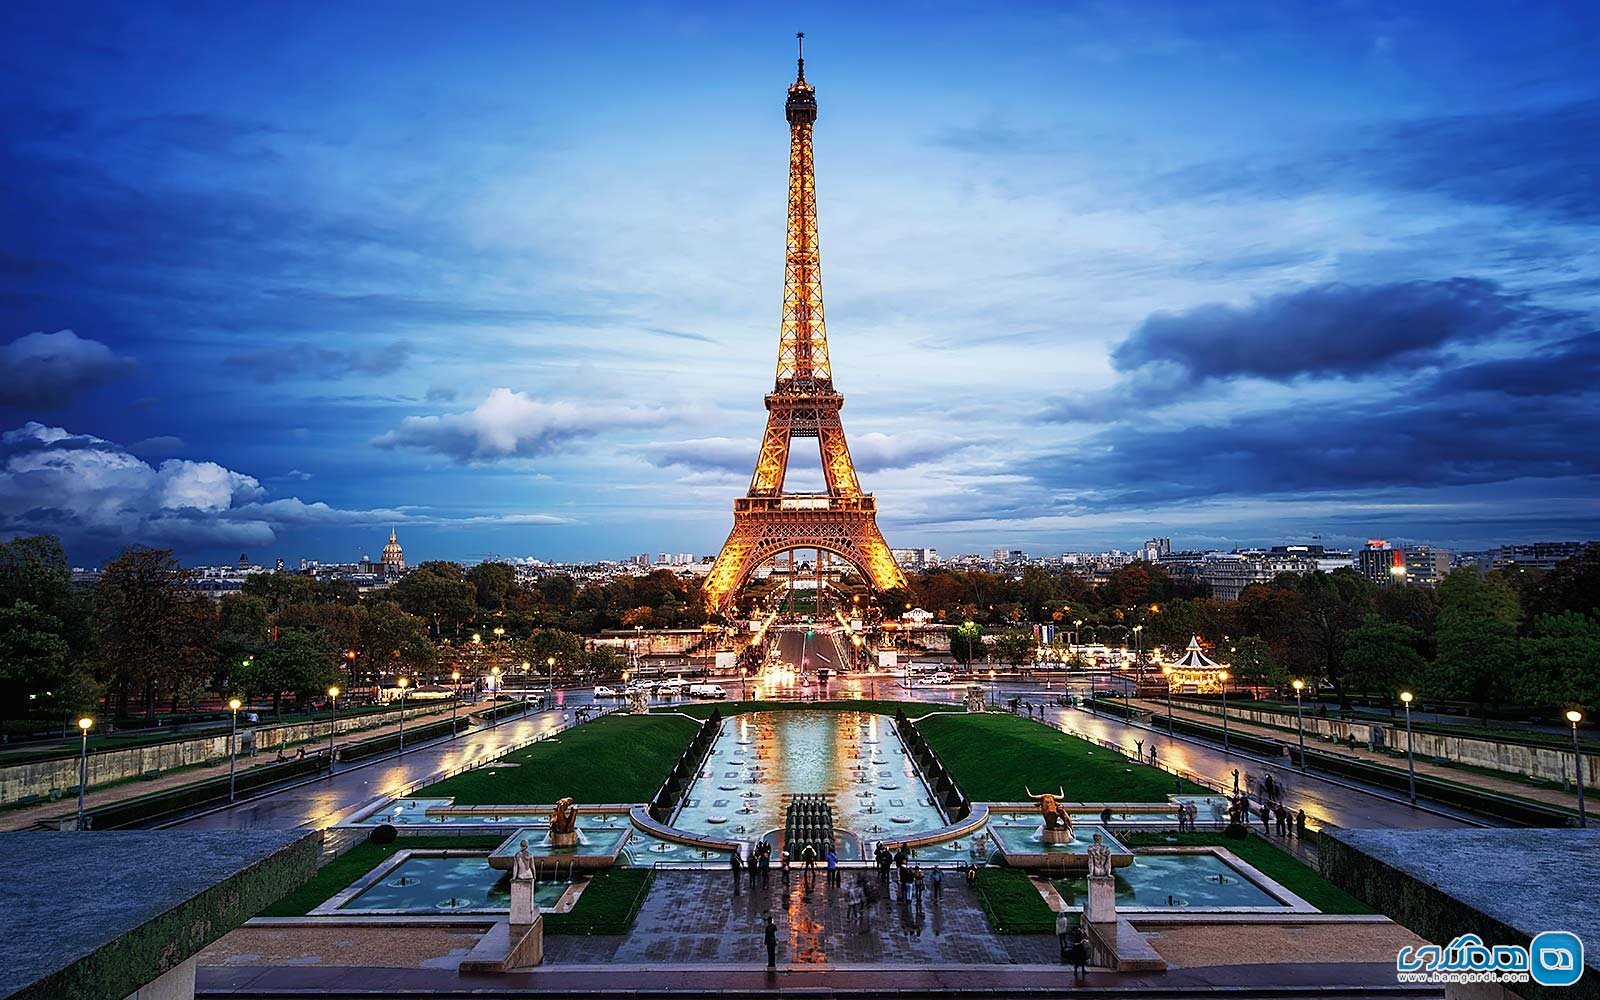 آشنایی با محله های پاریس : آروندیسمان هفتم : برج ایفل Eiffel Tower، موزه ها، سفارت ها و خانه های شیک